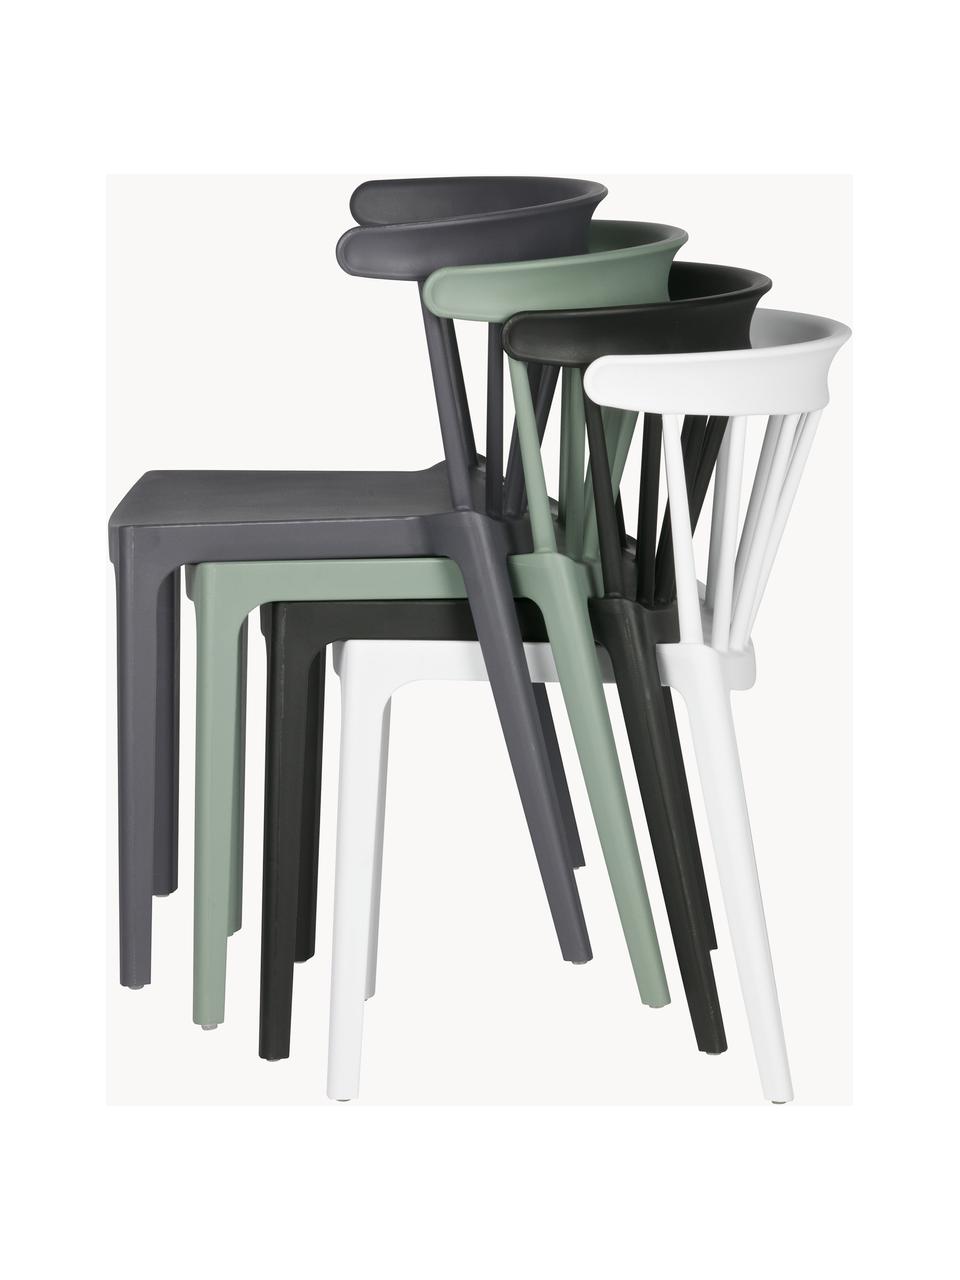 Krzesło ogrodowe Bliss, Polipropylen, Szałwiowy zielony, S 52 x G 53 cm